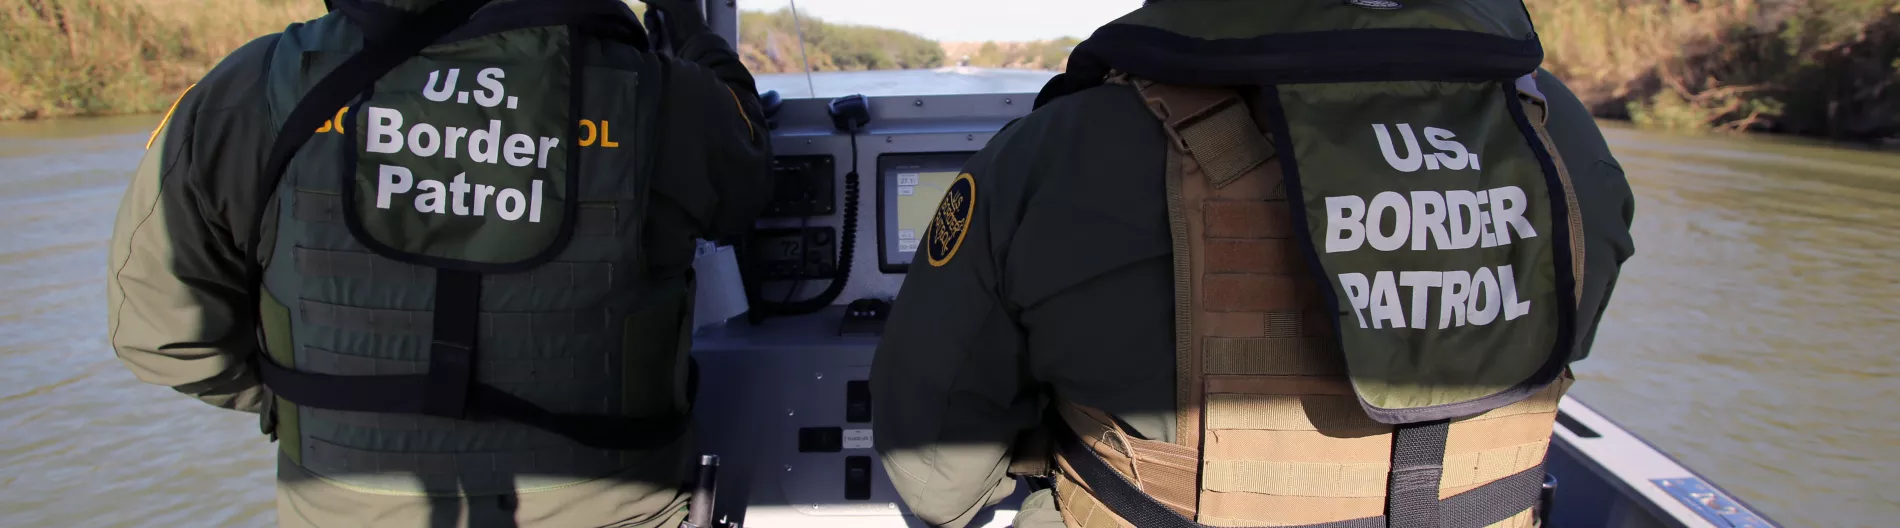 border patrol boat Rio Grande